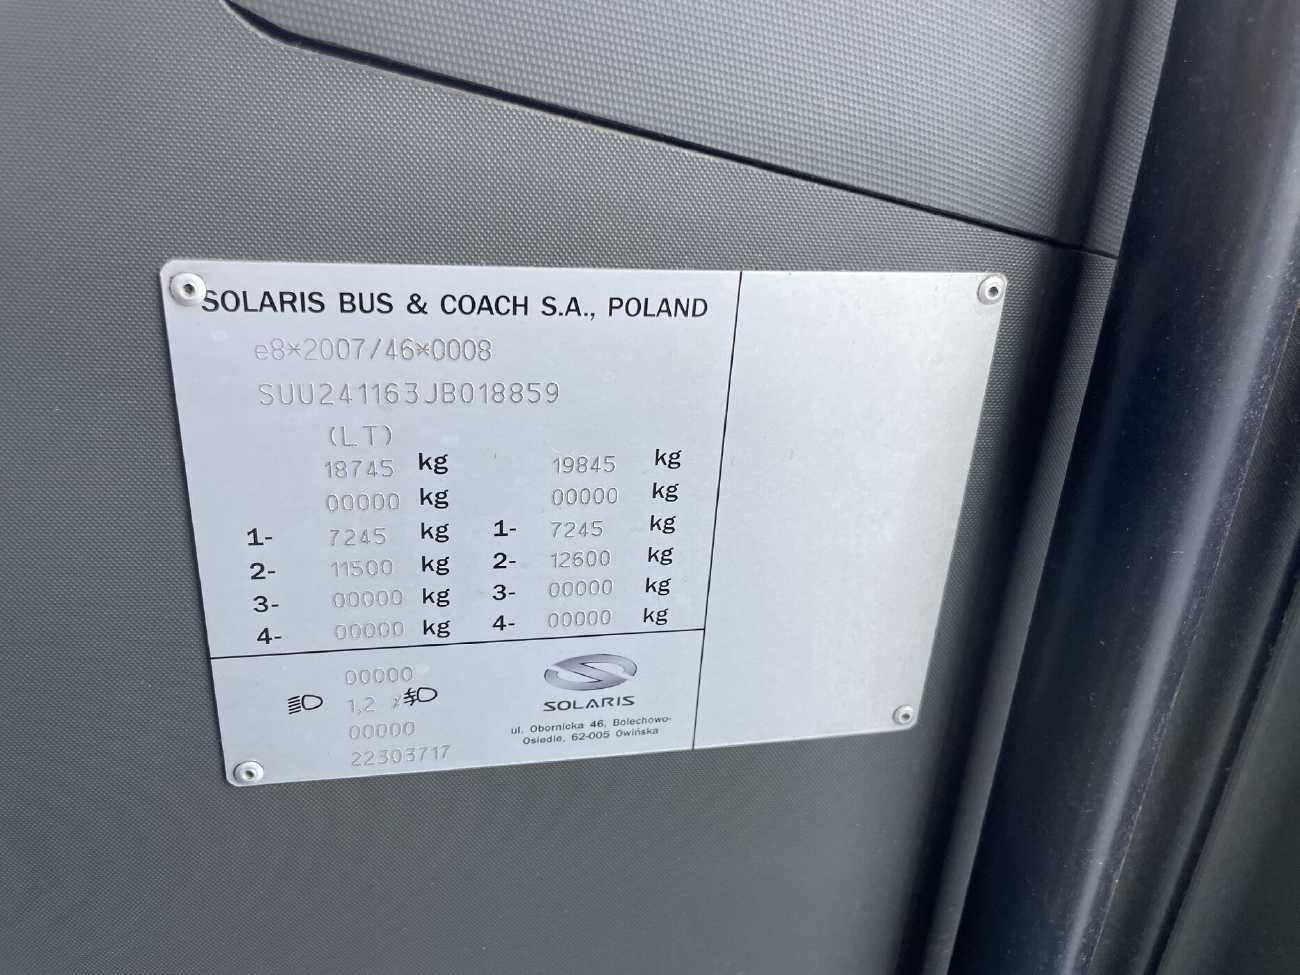 Vilnius, Solaris Urbino IV 12 № 4106